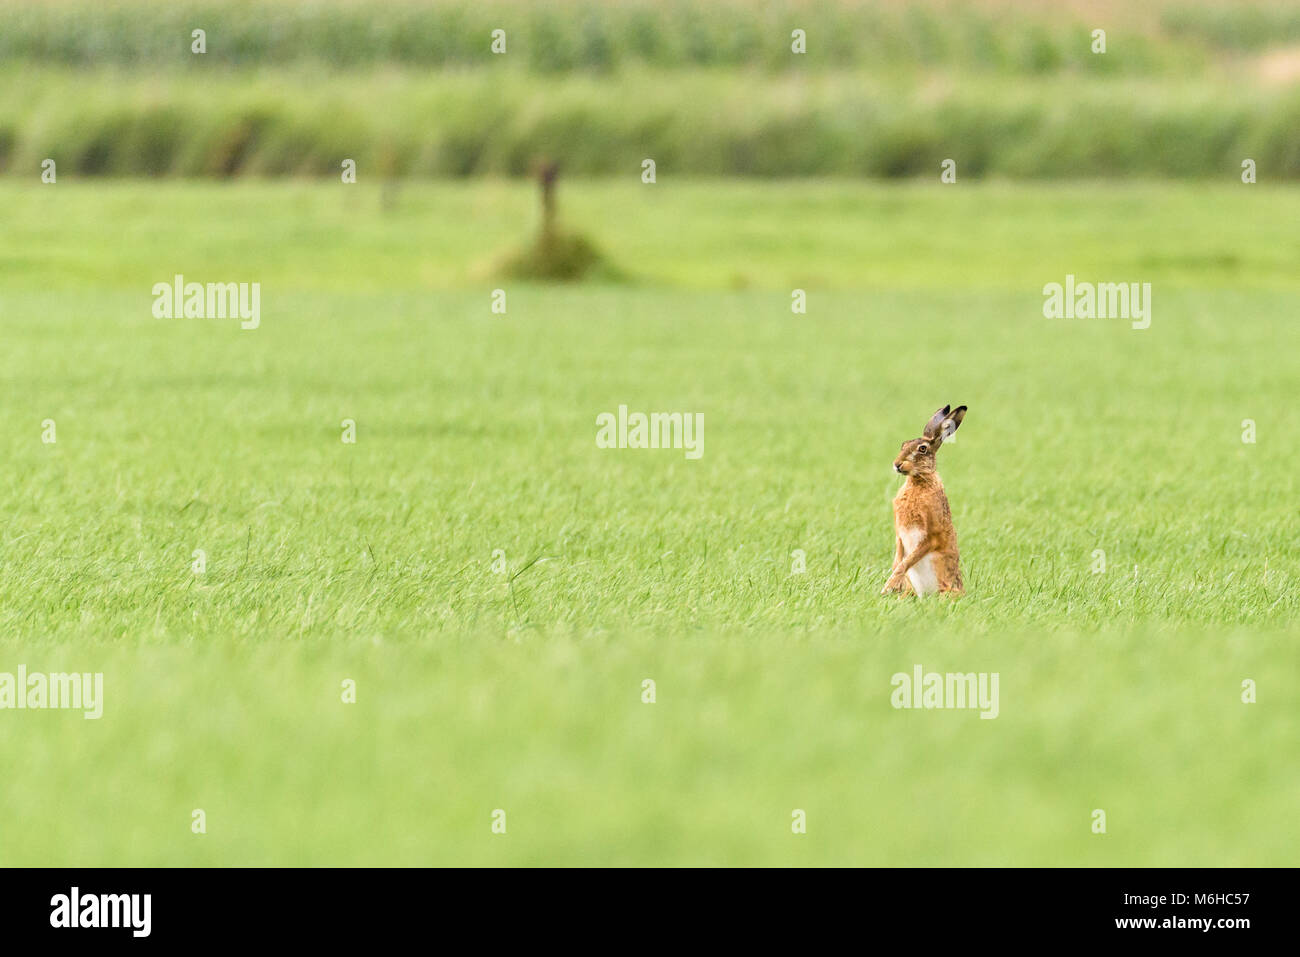 Eine wilde Hase steht in einem Feld und über den langen, grünen Gras. Stockfoto